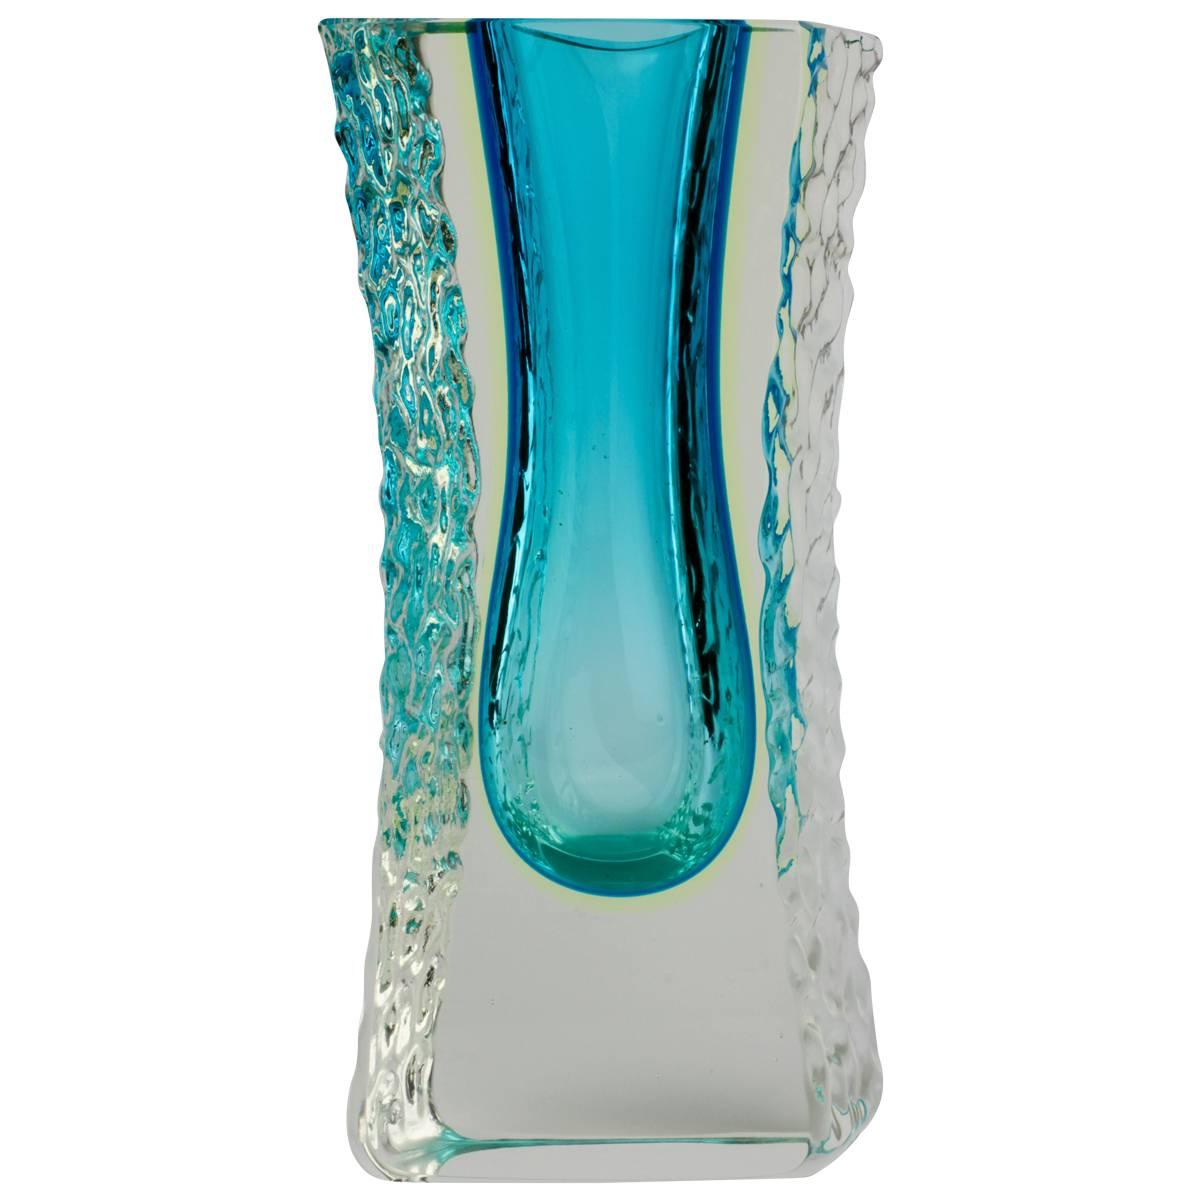 Eine schöne Vase aus Murano-Kunstglas aus der Mitte des Jahrhunderts, die Mandruzzato zugeschrieben wird, ca. 1980er Jahre. Die Kombination aus Ozeanblau und dem strukturierten, klaren 'Sommerso'-Eisglas sieht einfach umwerfend aus.

Dies ist eine